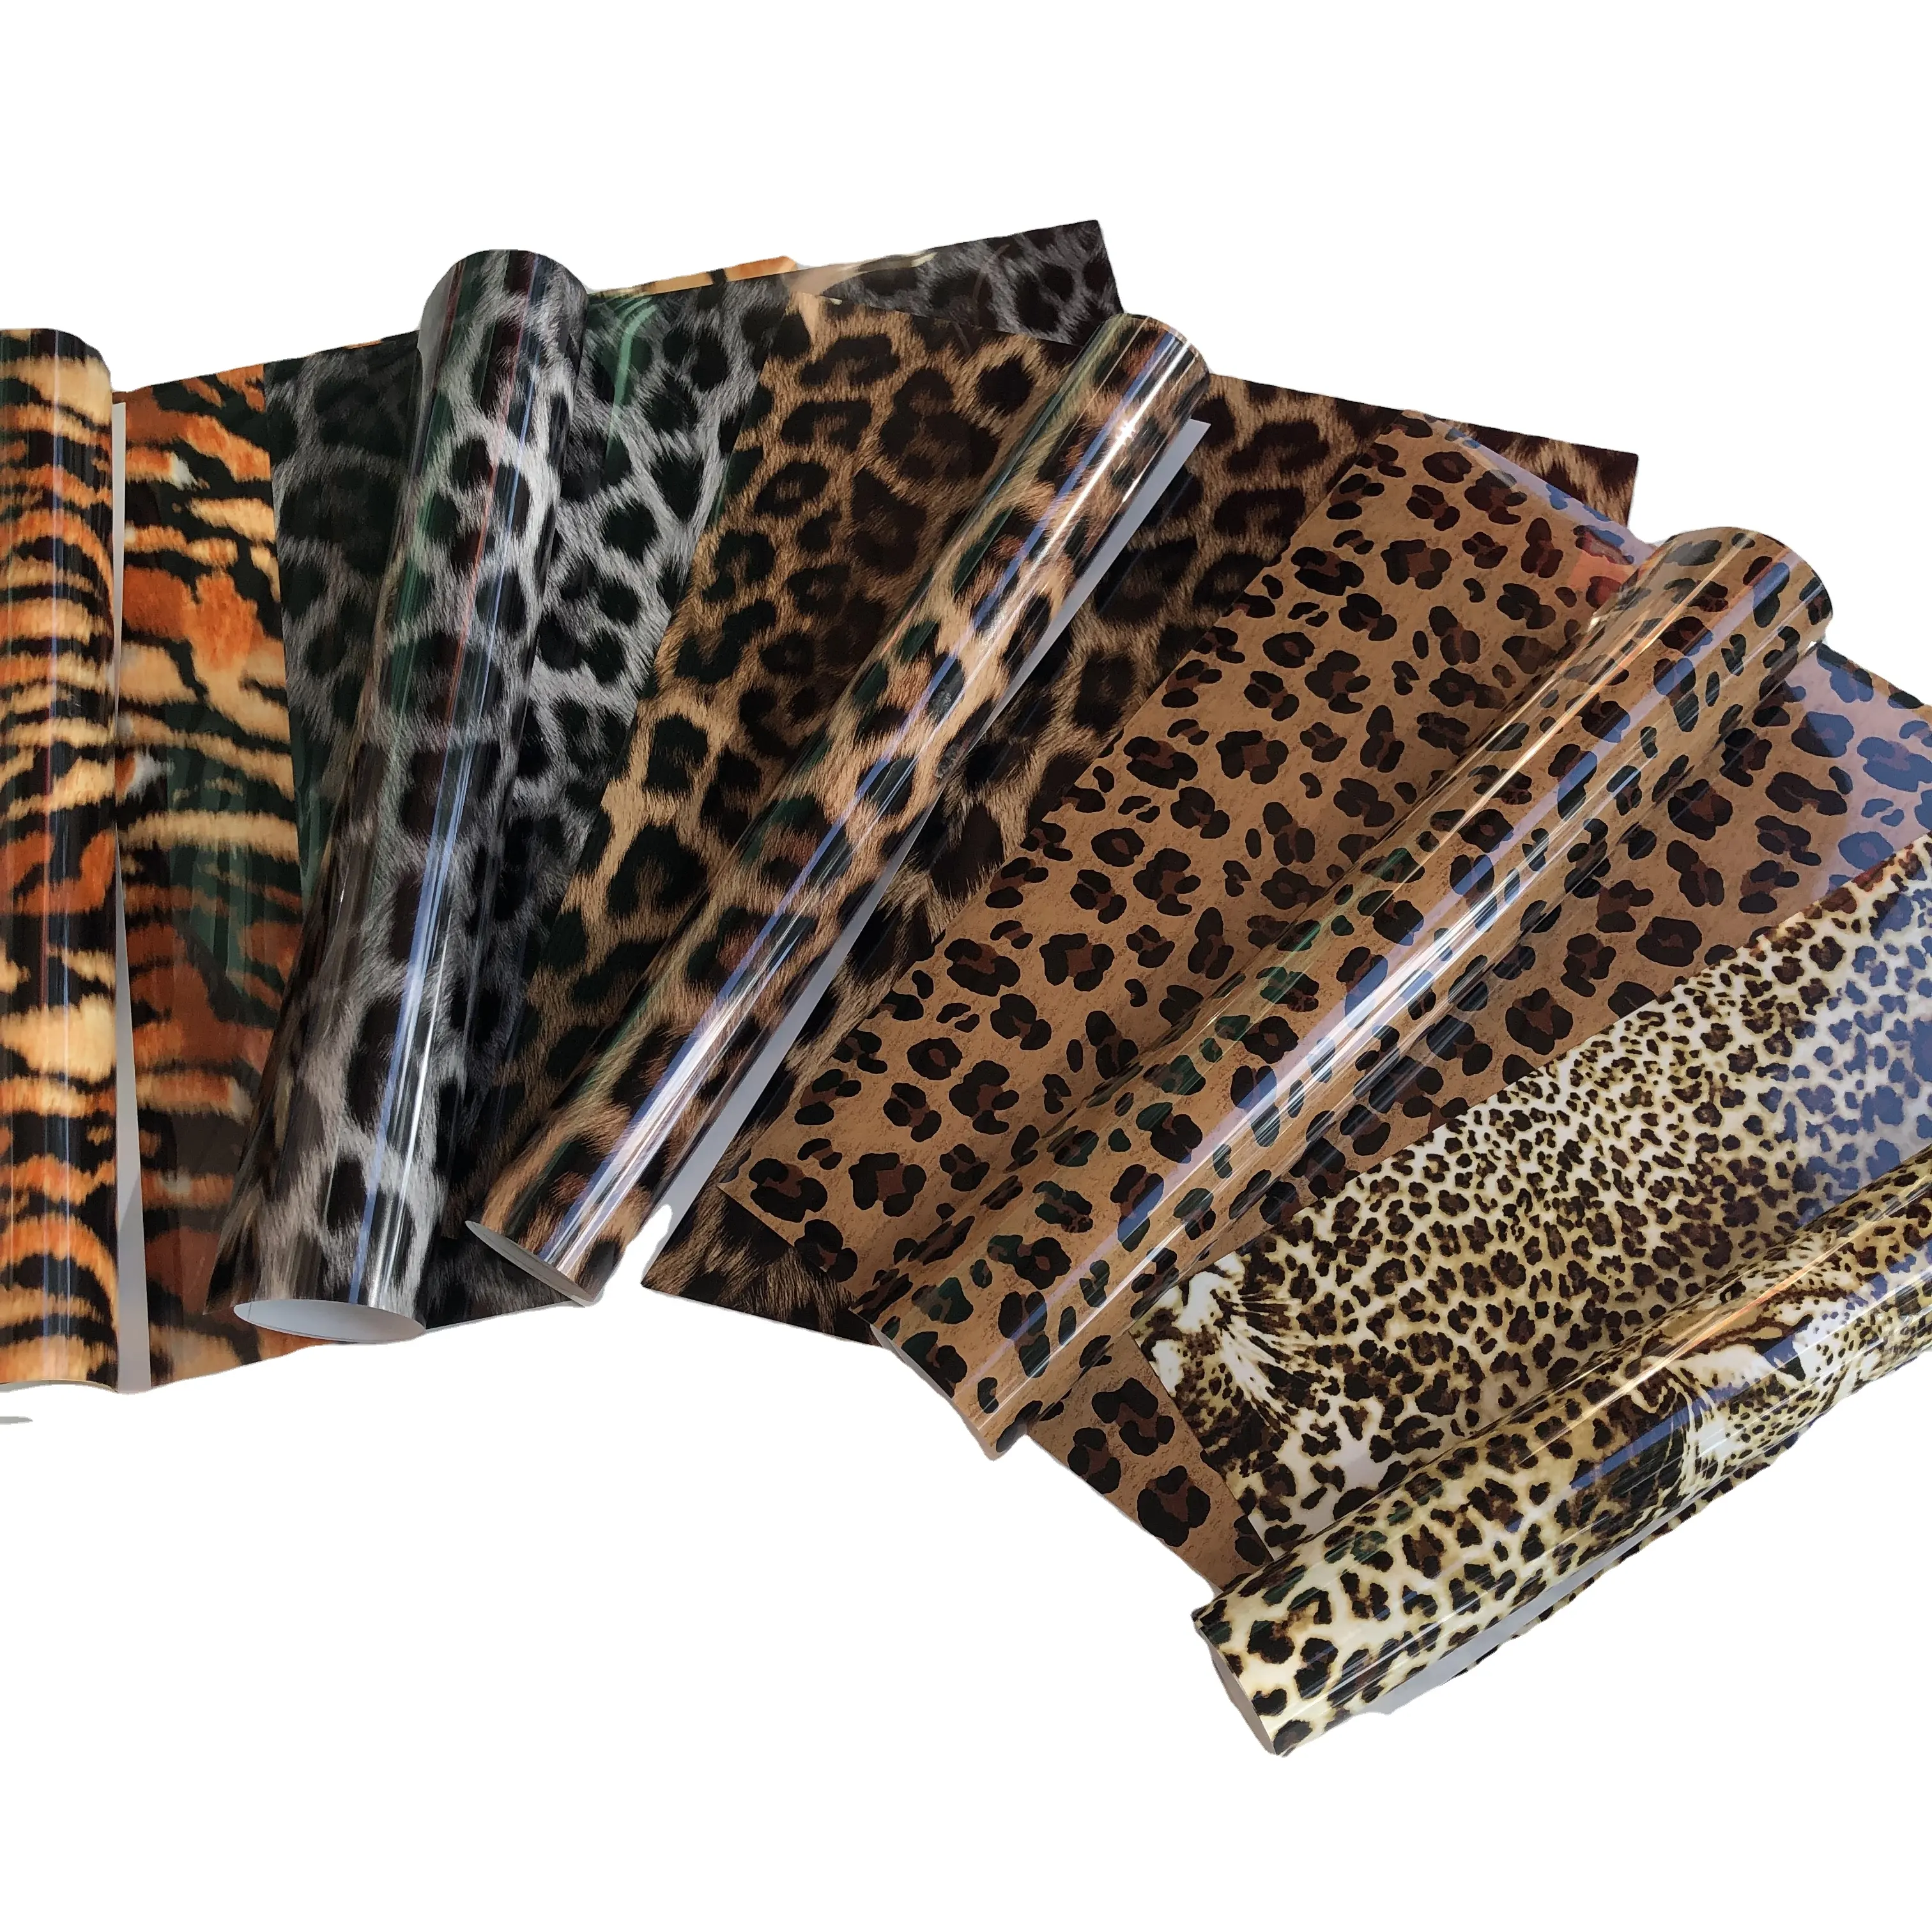 Htv-7 hojas de 12X10 pulgadas de vinilo con estampado de leopardo, Htv, transferencia térmica, para manualidades, ropa DIY